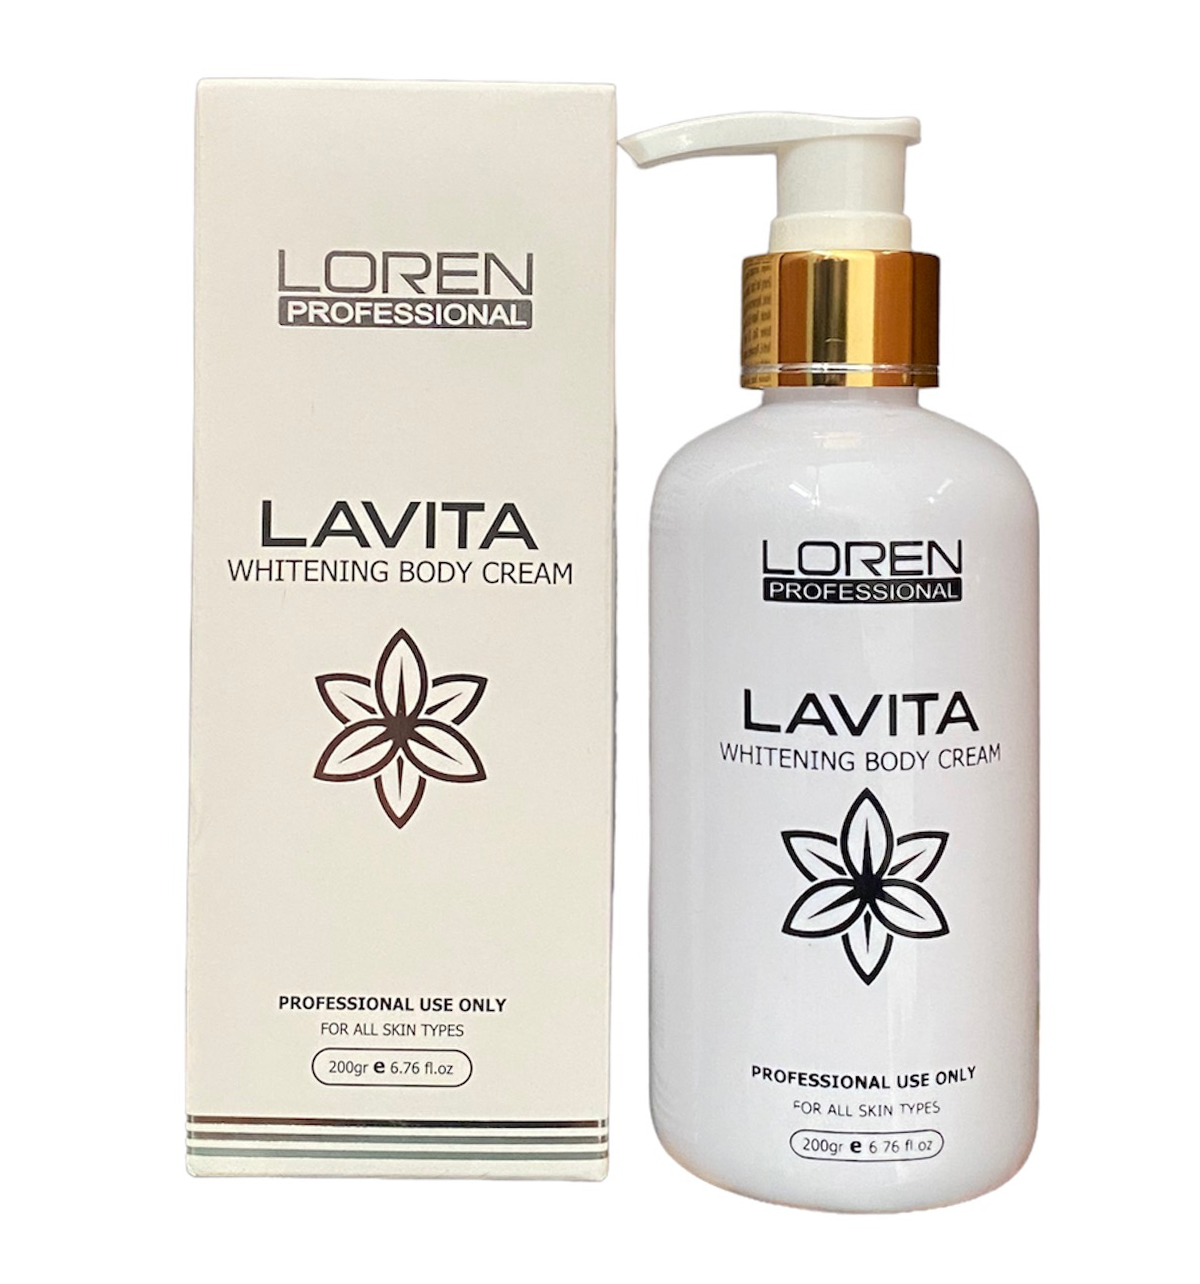 Kem dưỡng da Lavita Whitening Body Cream Loren Professional dưỡng ẩm da, dưỡng trắng da mềm mịn, hỗ trợ phục hồi da, giúp ngăn ngừa lão hóa